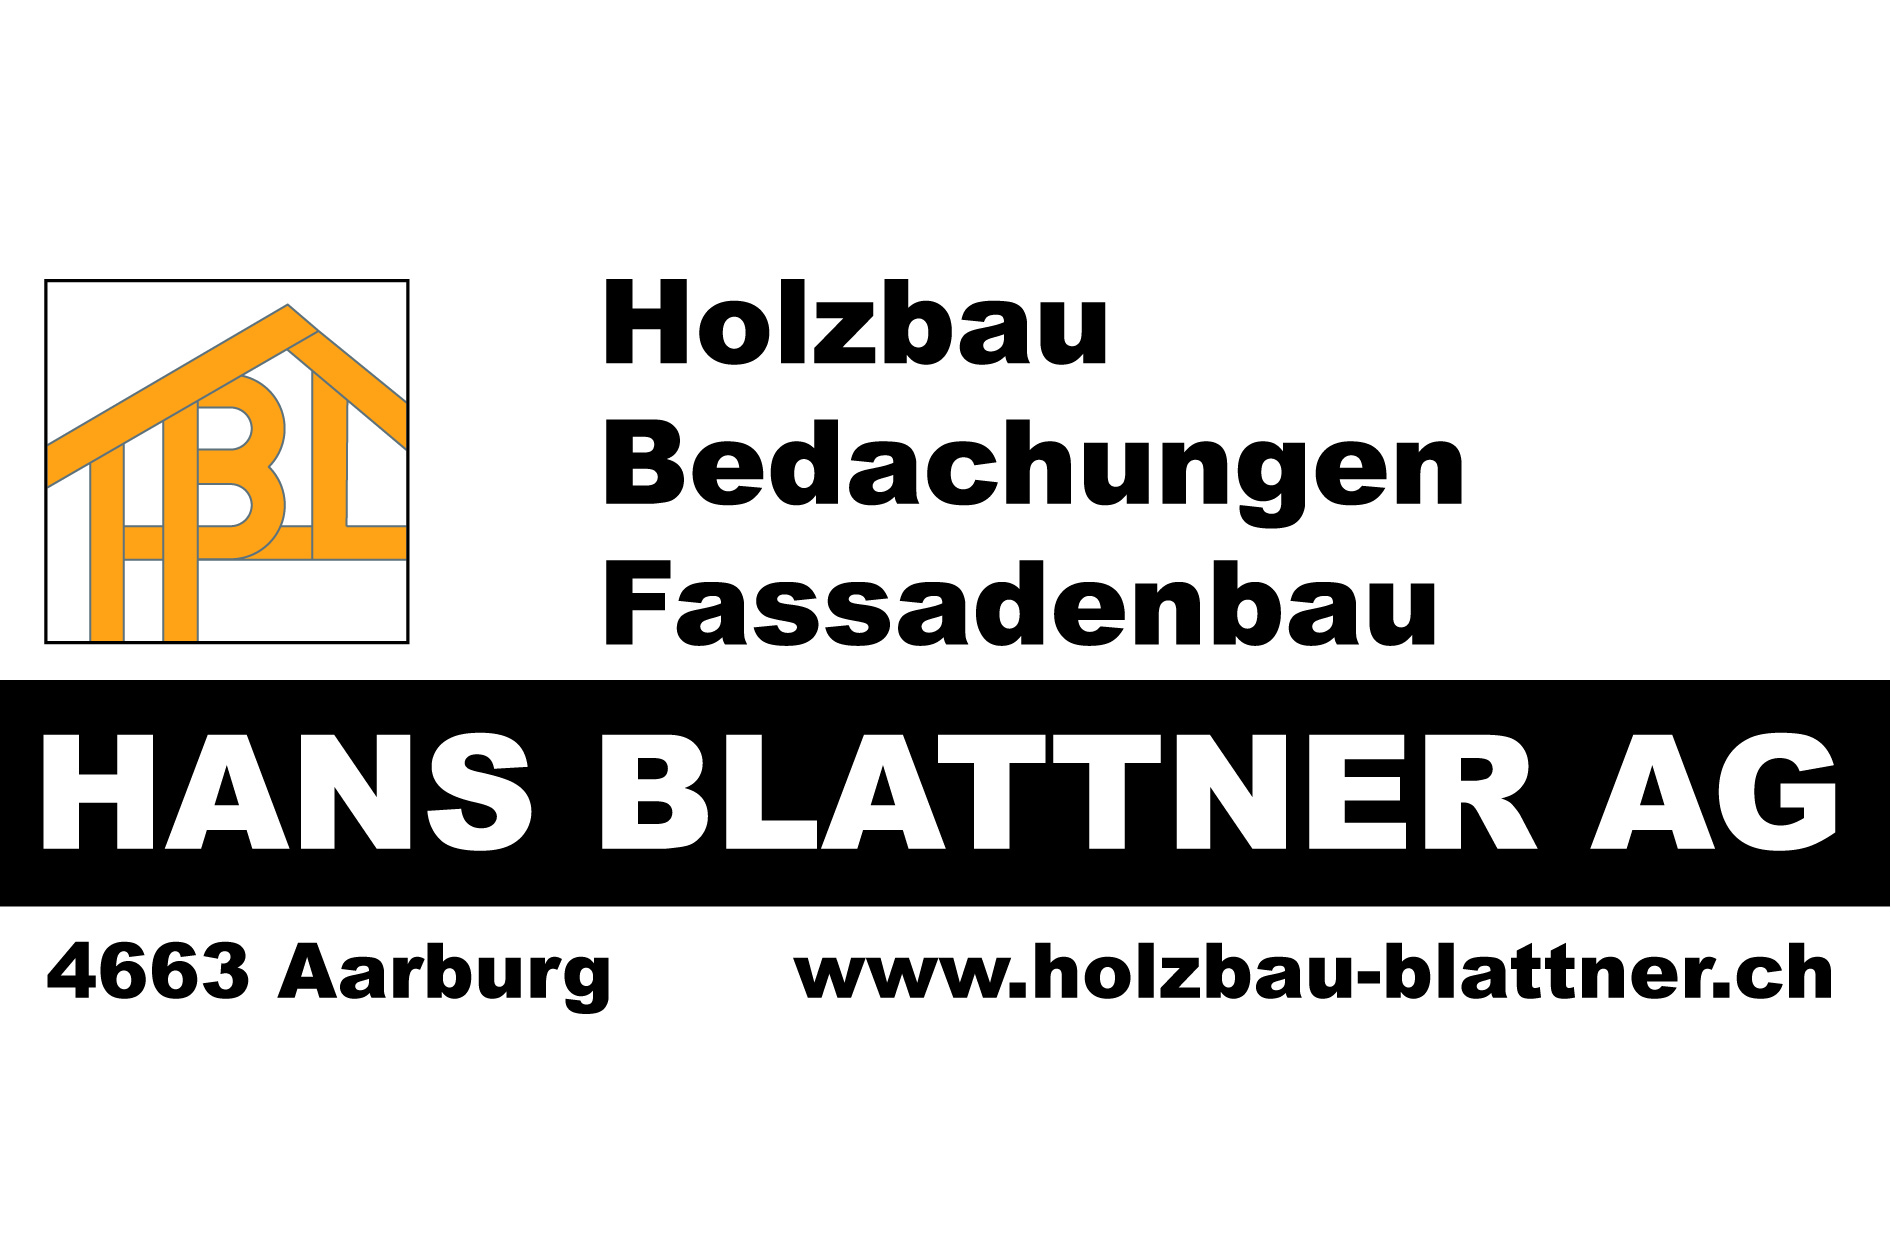 Hans Blattner AG